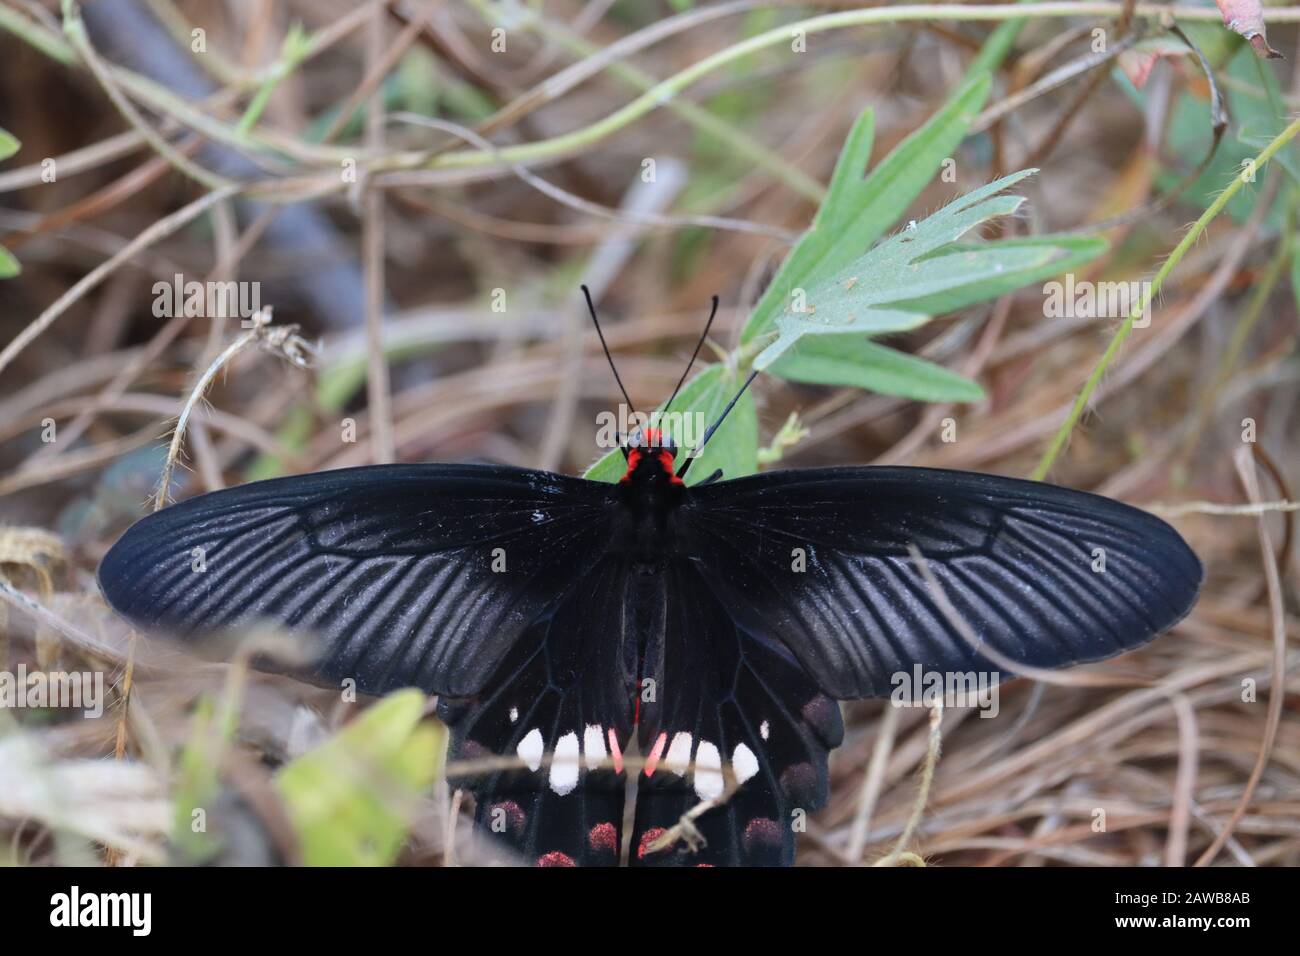 Las alas de la mariposa negra ayudan a elevar en un 200% el